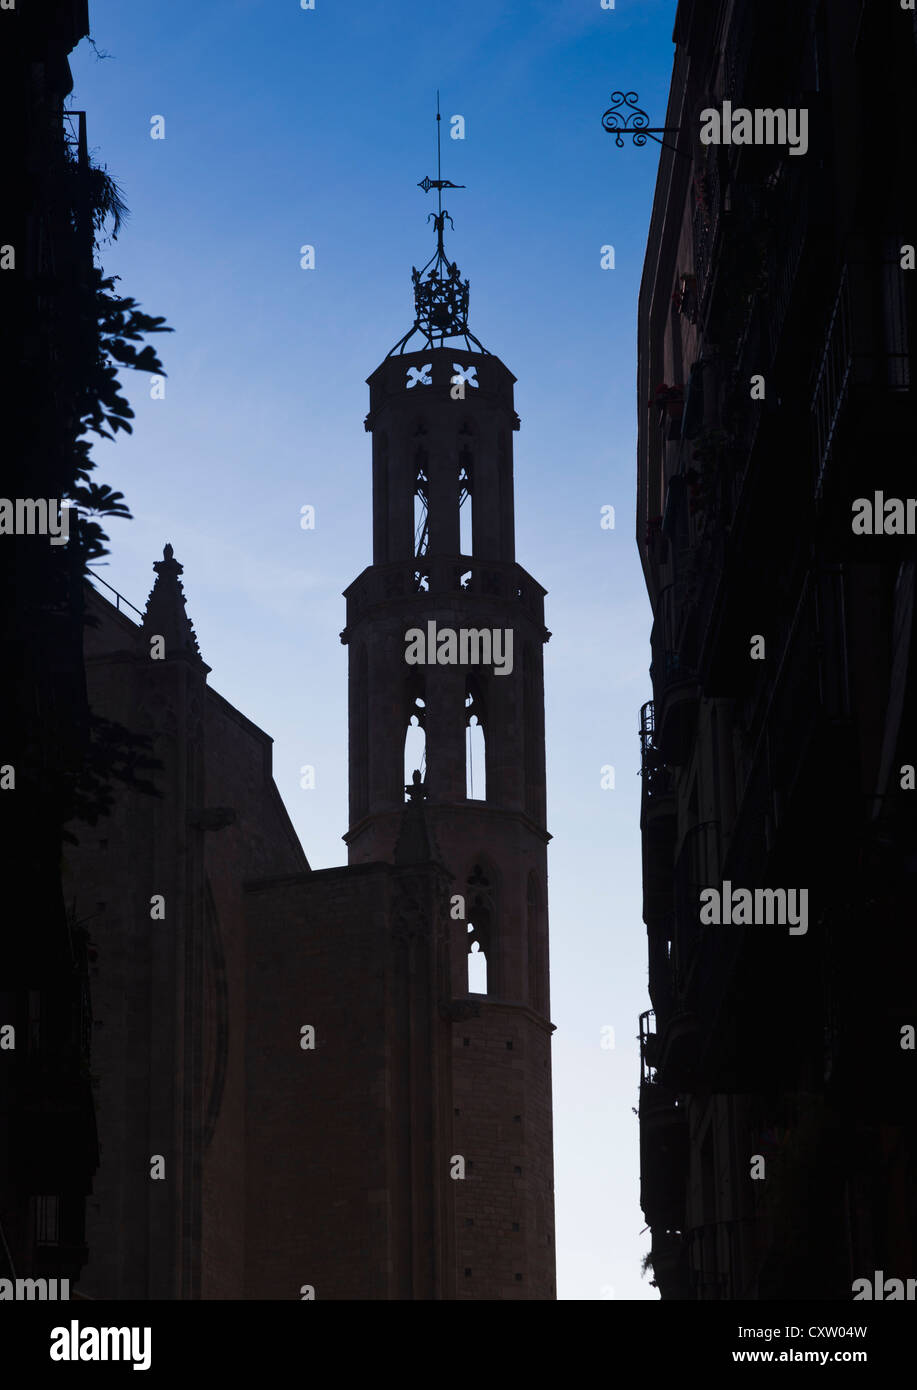 Barcelone, Espagne. Flèche de Basilique Santa Maria del Mar. architecture de style gothique catalan. Banque D'Images